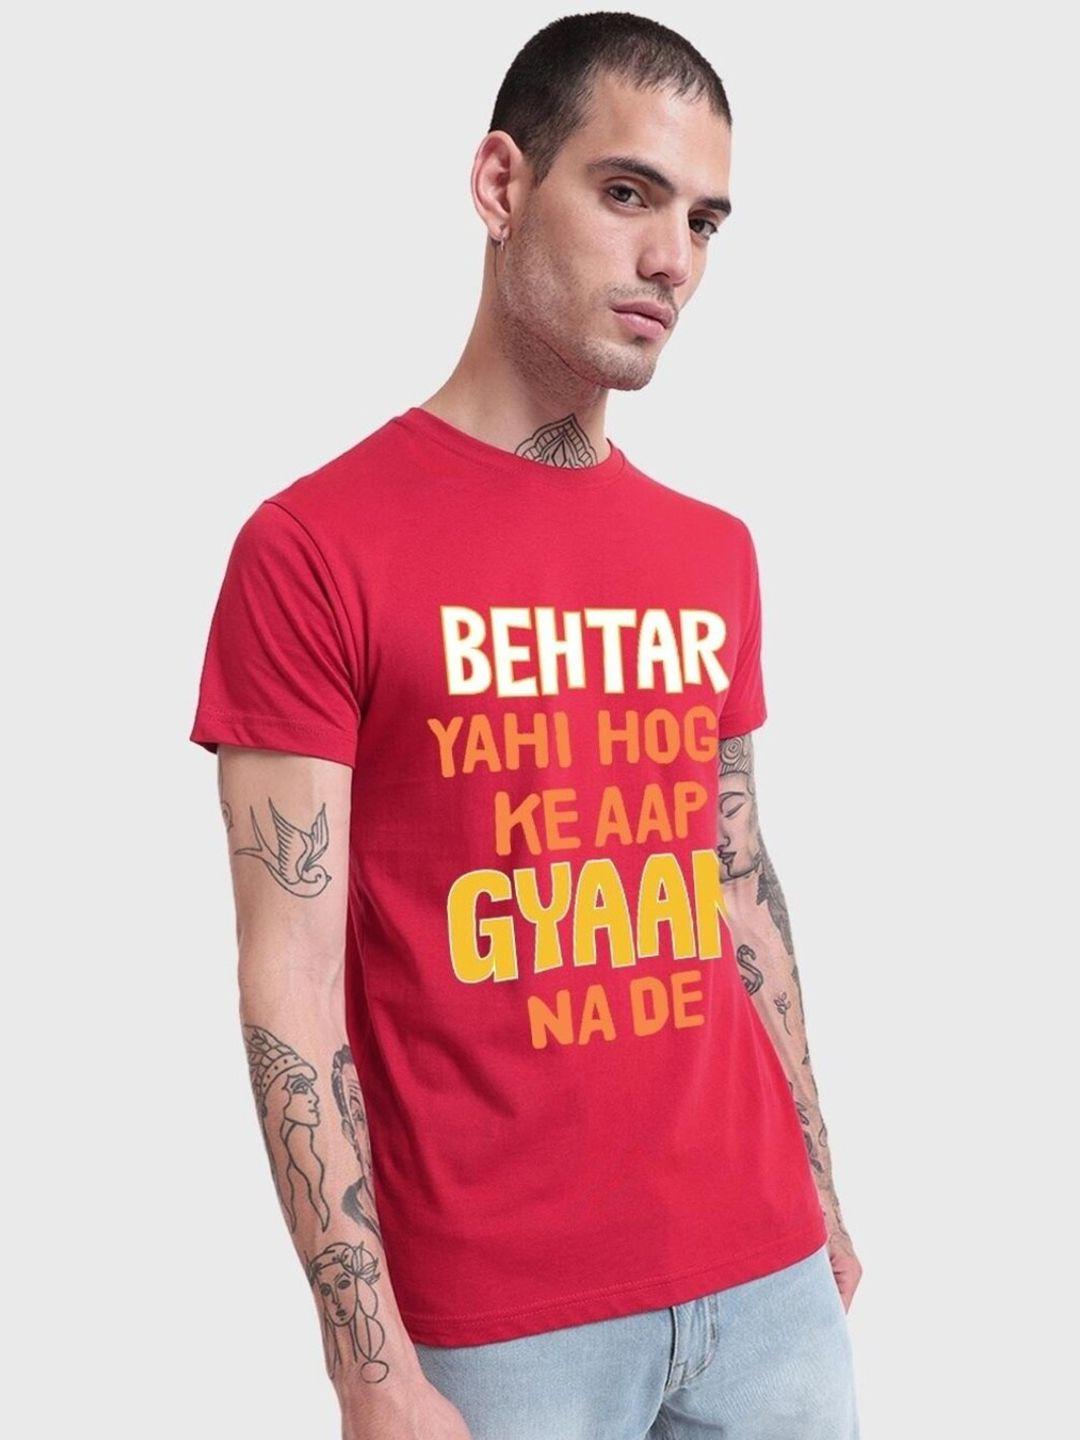 bewakoof typography printed cotton t-shirt